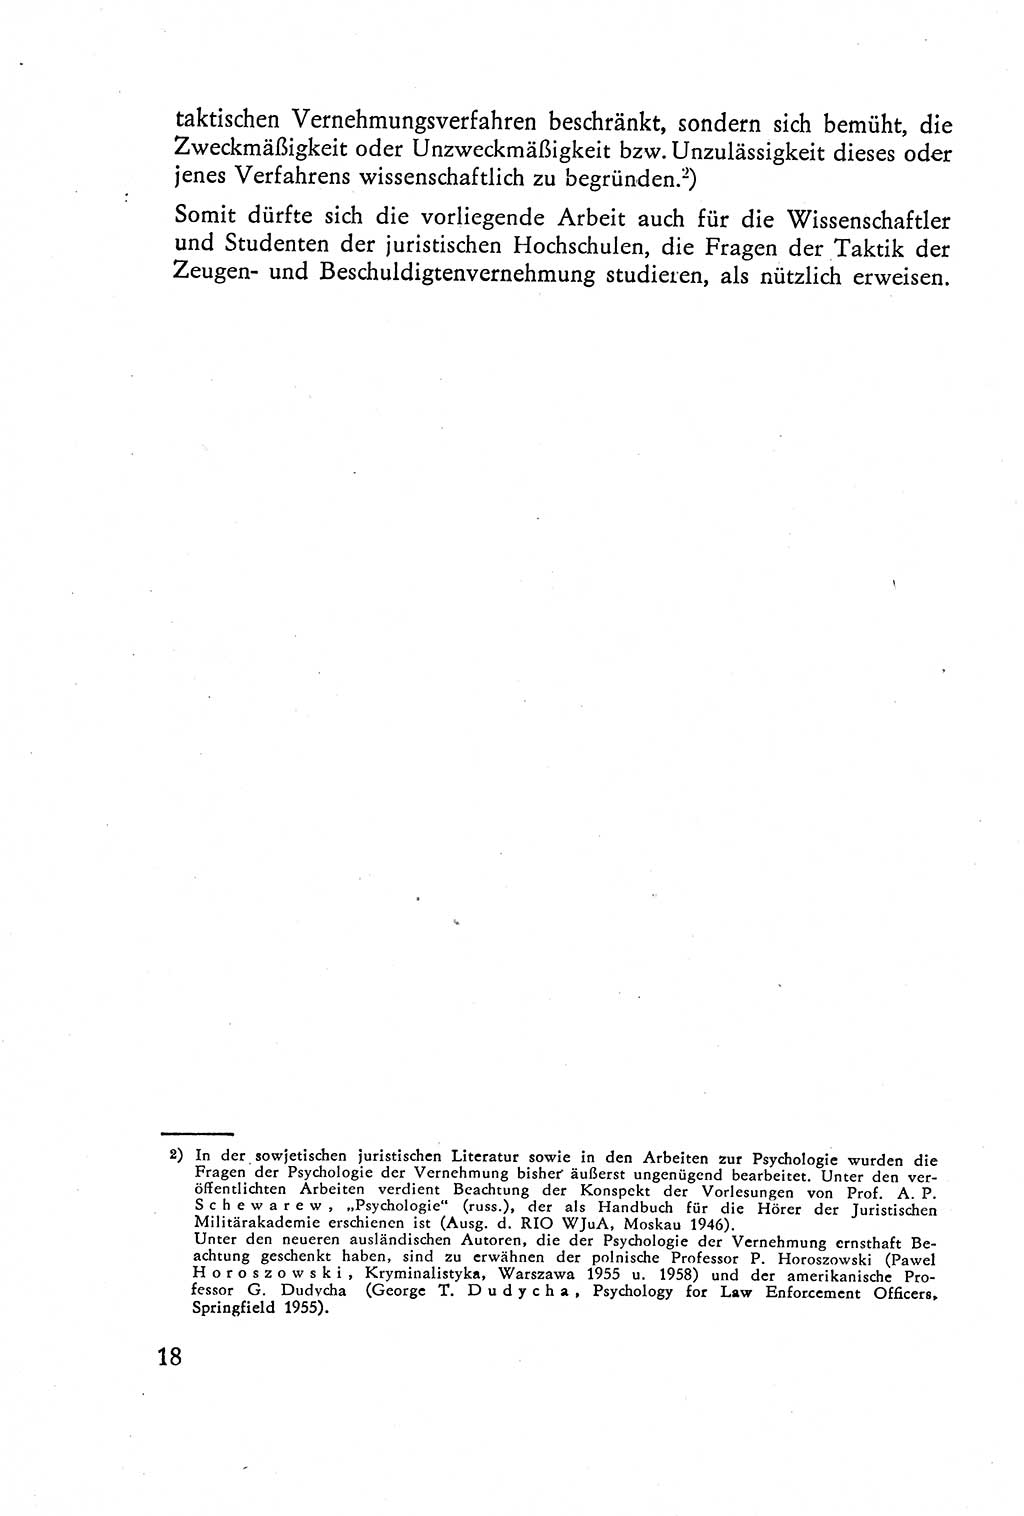 Die Vernehmung [Deutsche Demokratische Republik (DDR)] 1960, Seite 18 (Vern. DDR 1960, S. 18)